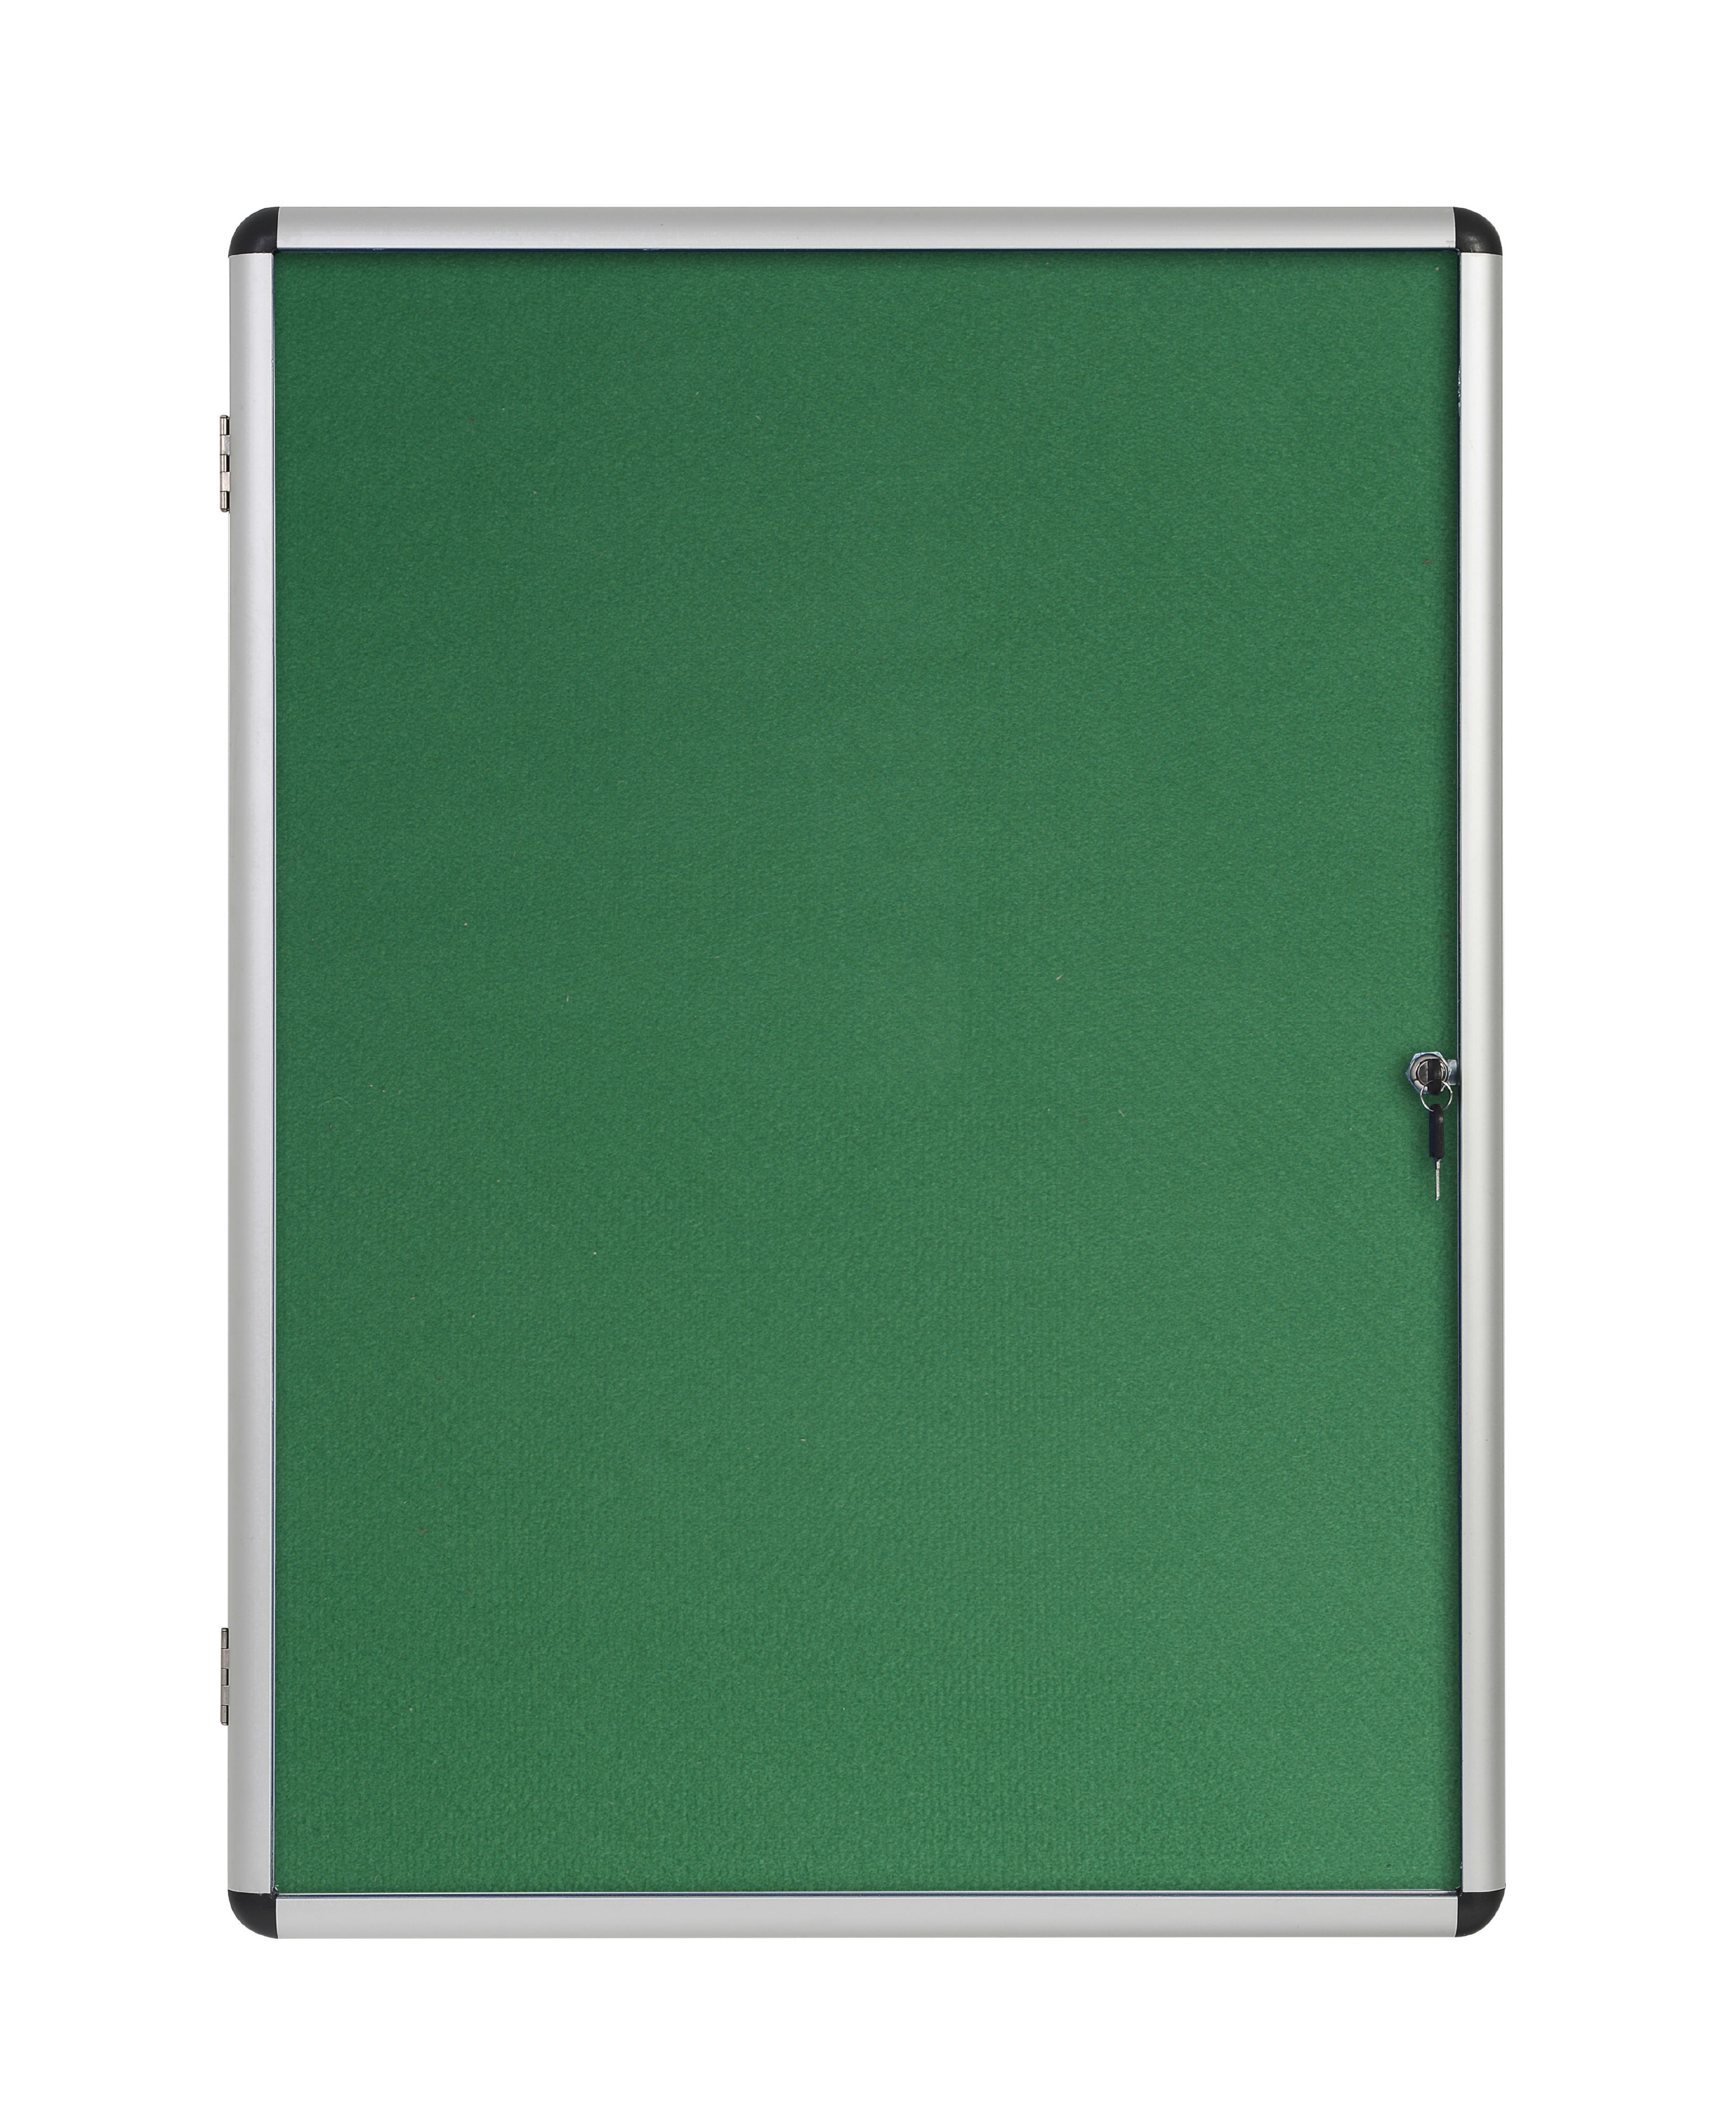 Bi-Office Enclore Green Felt Lockable Noticeboard Display Case 9 x A4 720x981mm